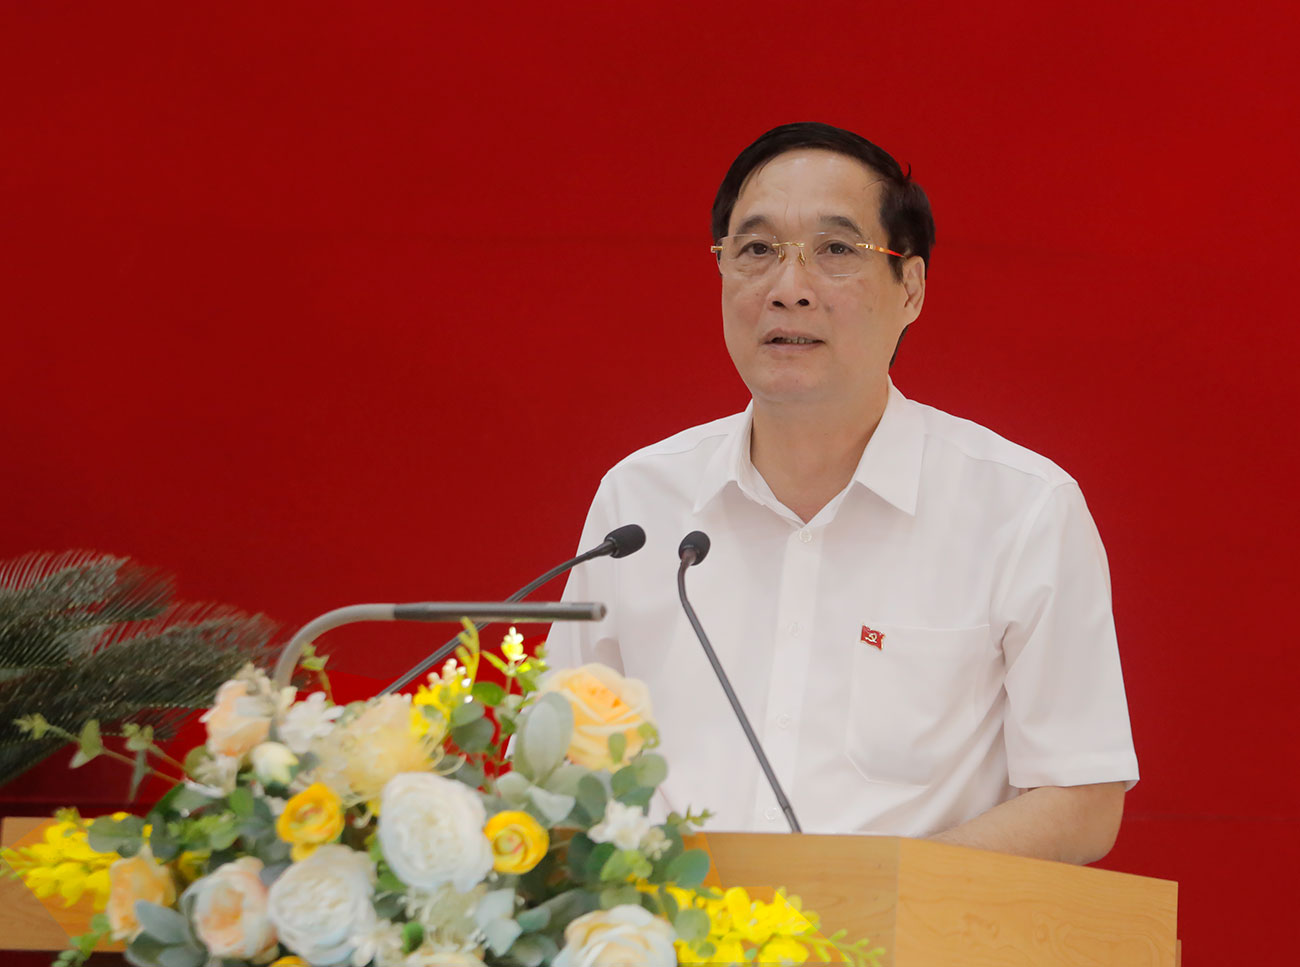 Bí thư Tỉnh ủy Phú Thọ- Bùi Minh Châu phát biểu chỉ đạo tại hội nghị